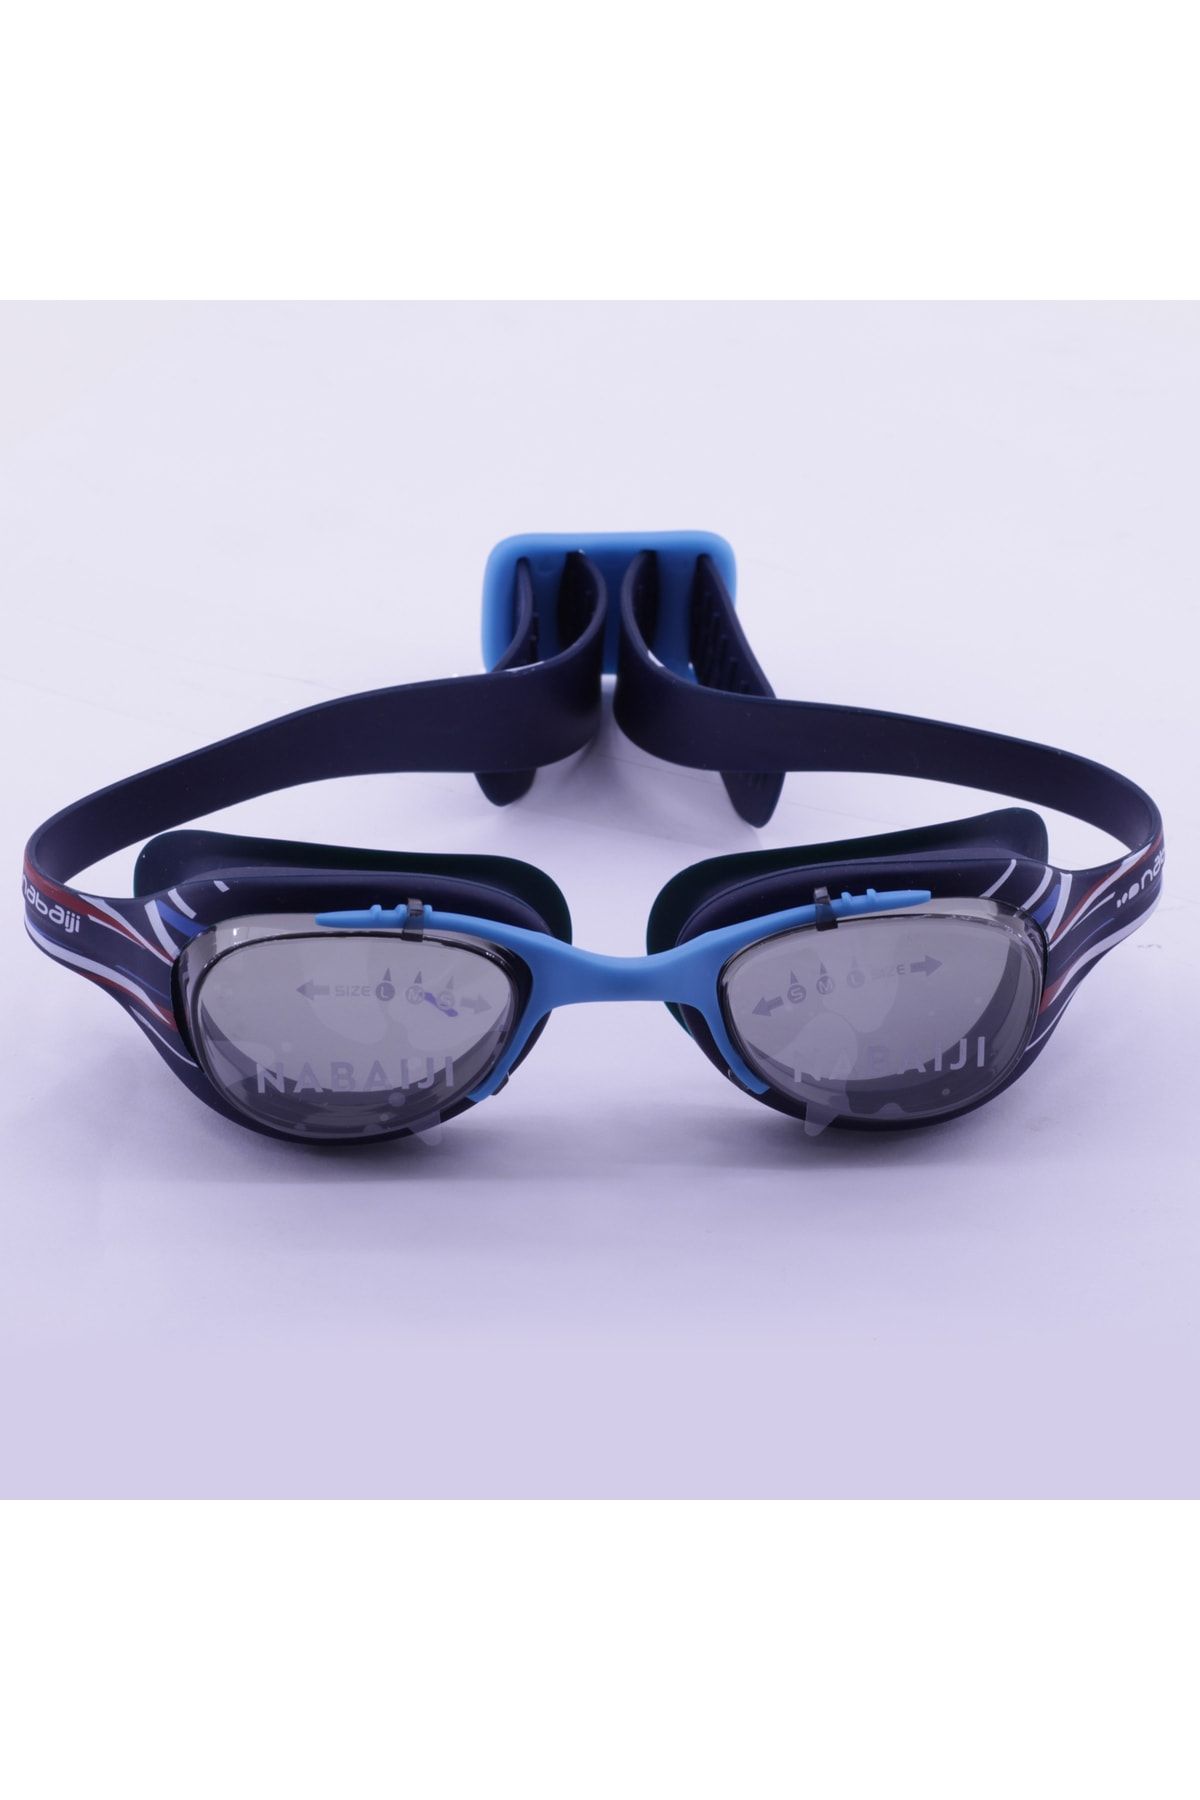 CN Ticaret Yetişkin Yüzücü Gözlüğü Mavi Siyah Çizgili Baskılı L Boy Şeffaf Camlı Nabaiji